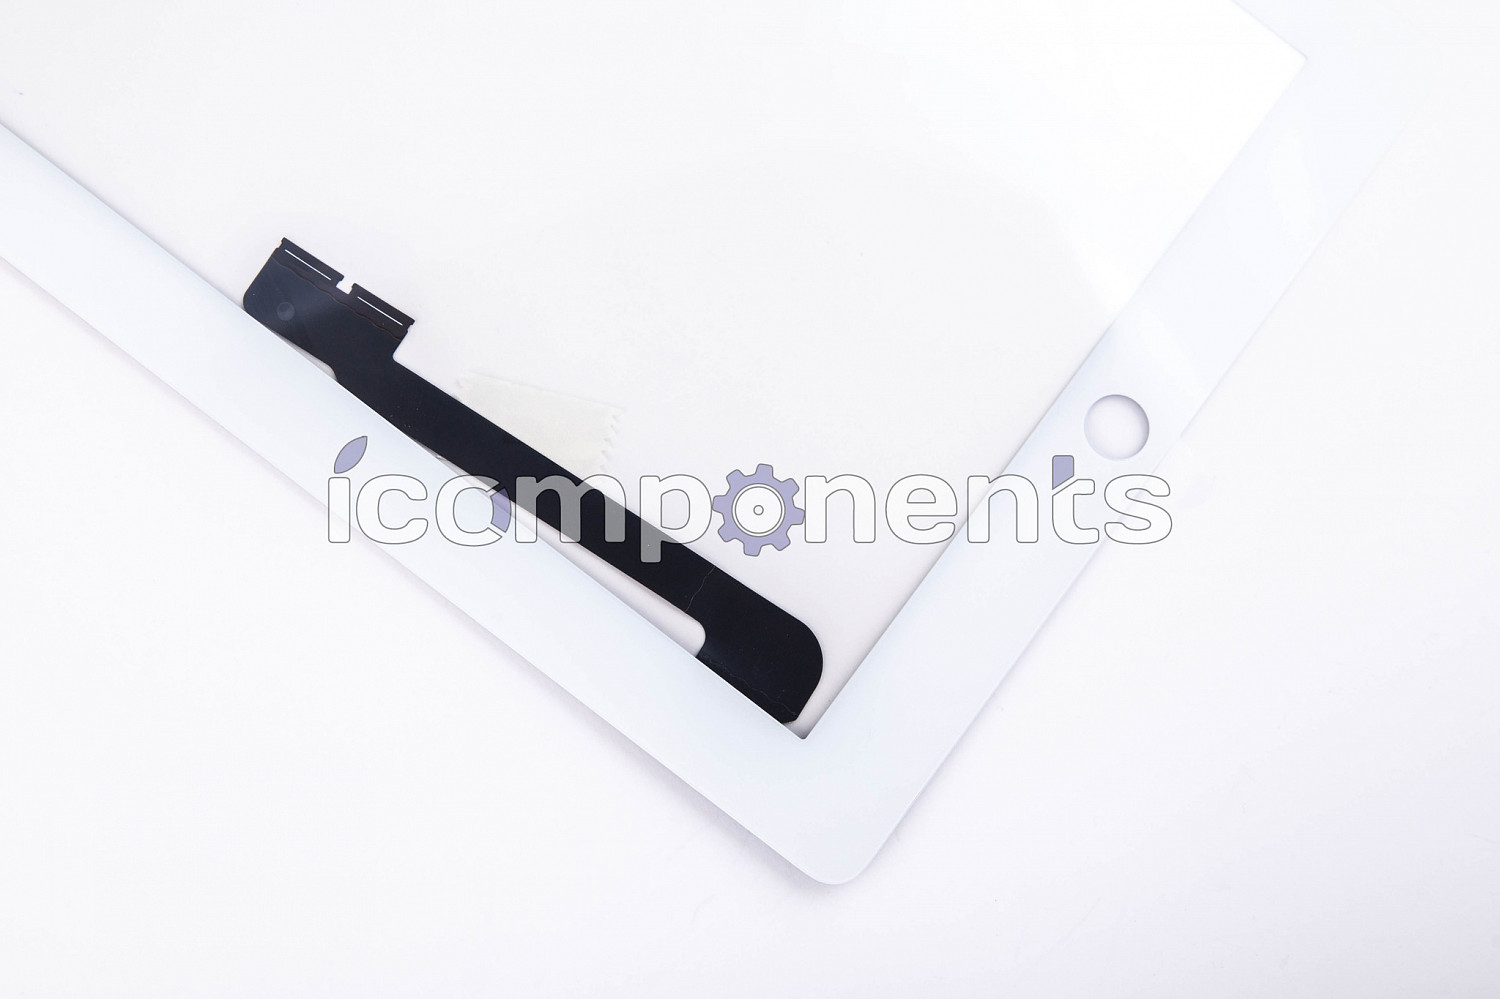 картинка iPad 3/4 - touchscreen белый ORIG, копия шлейф от магазина Компания+